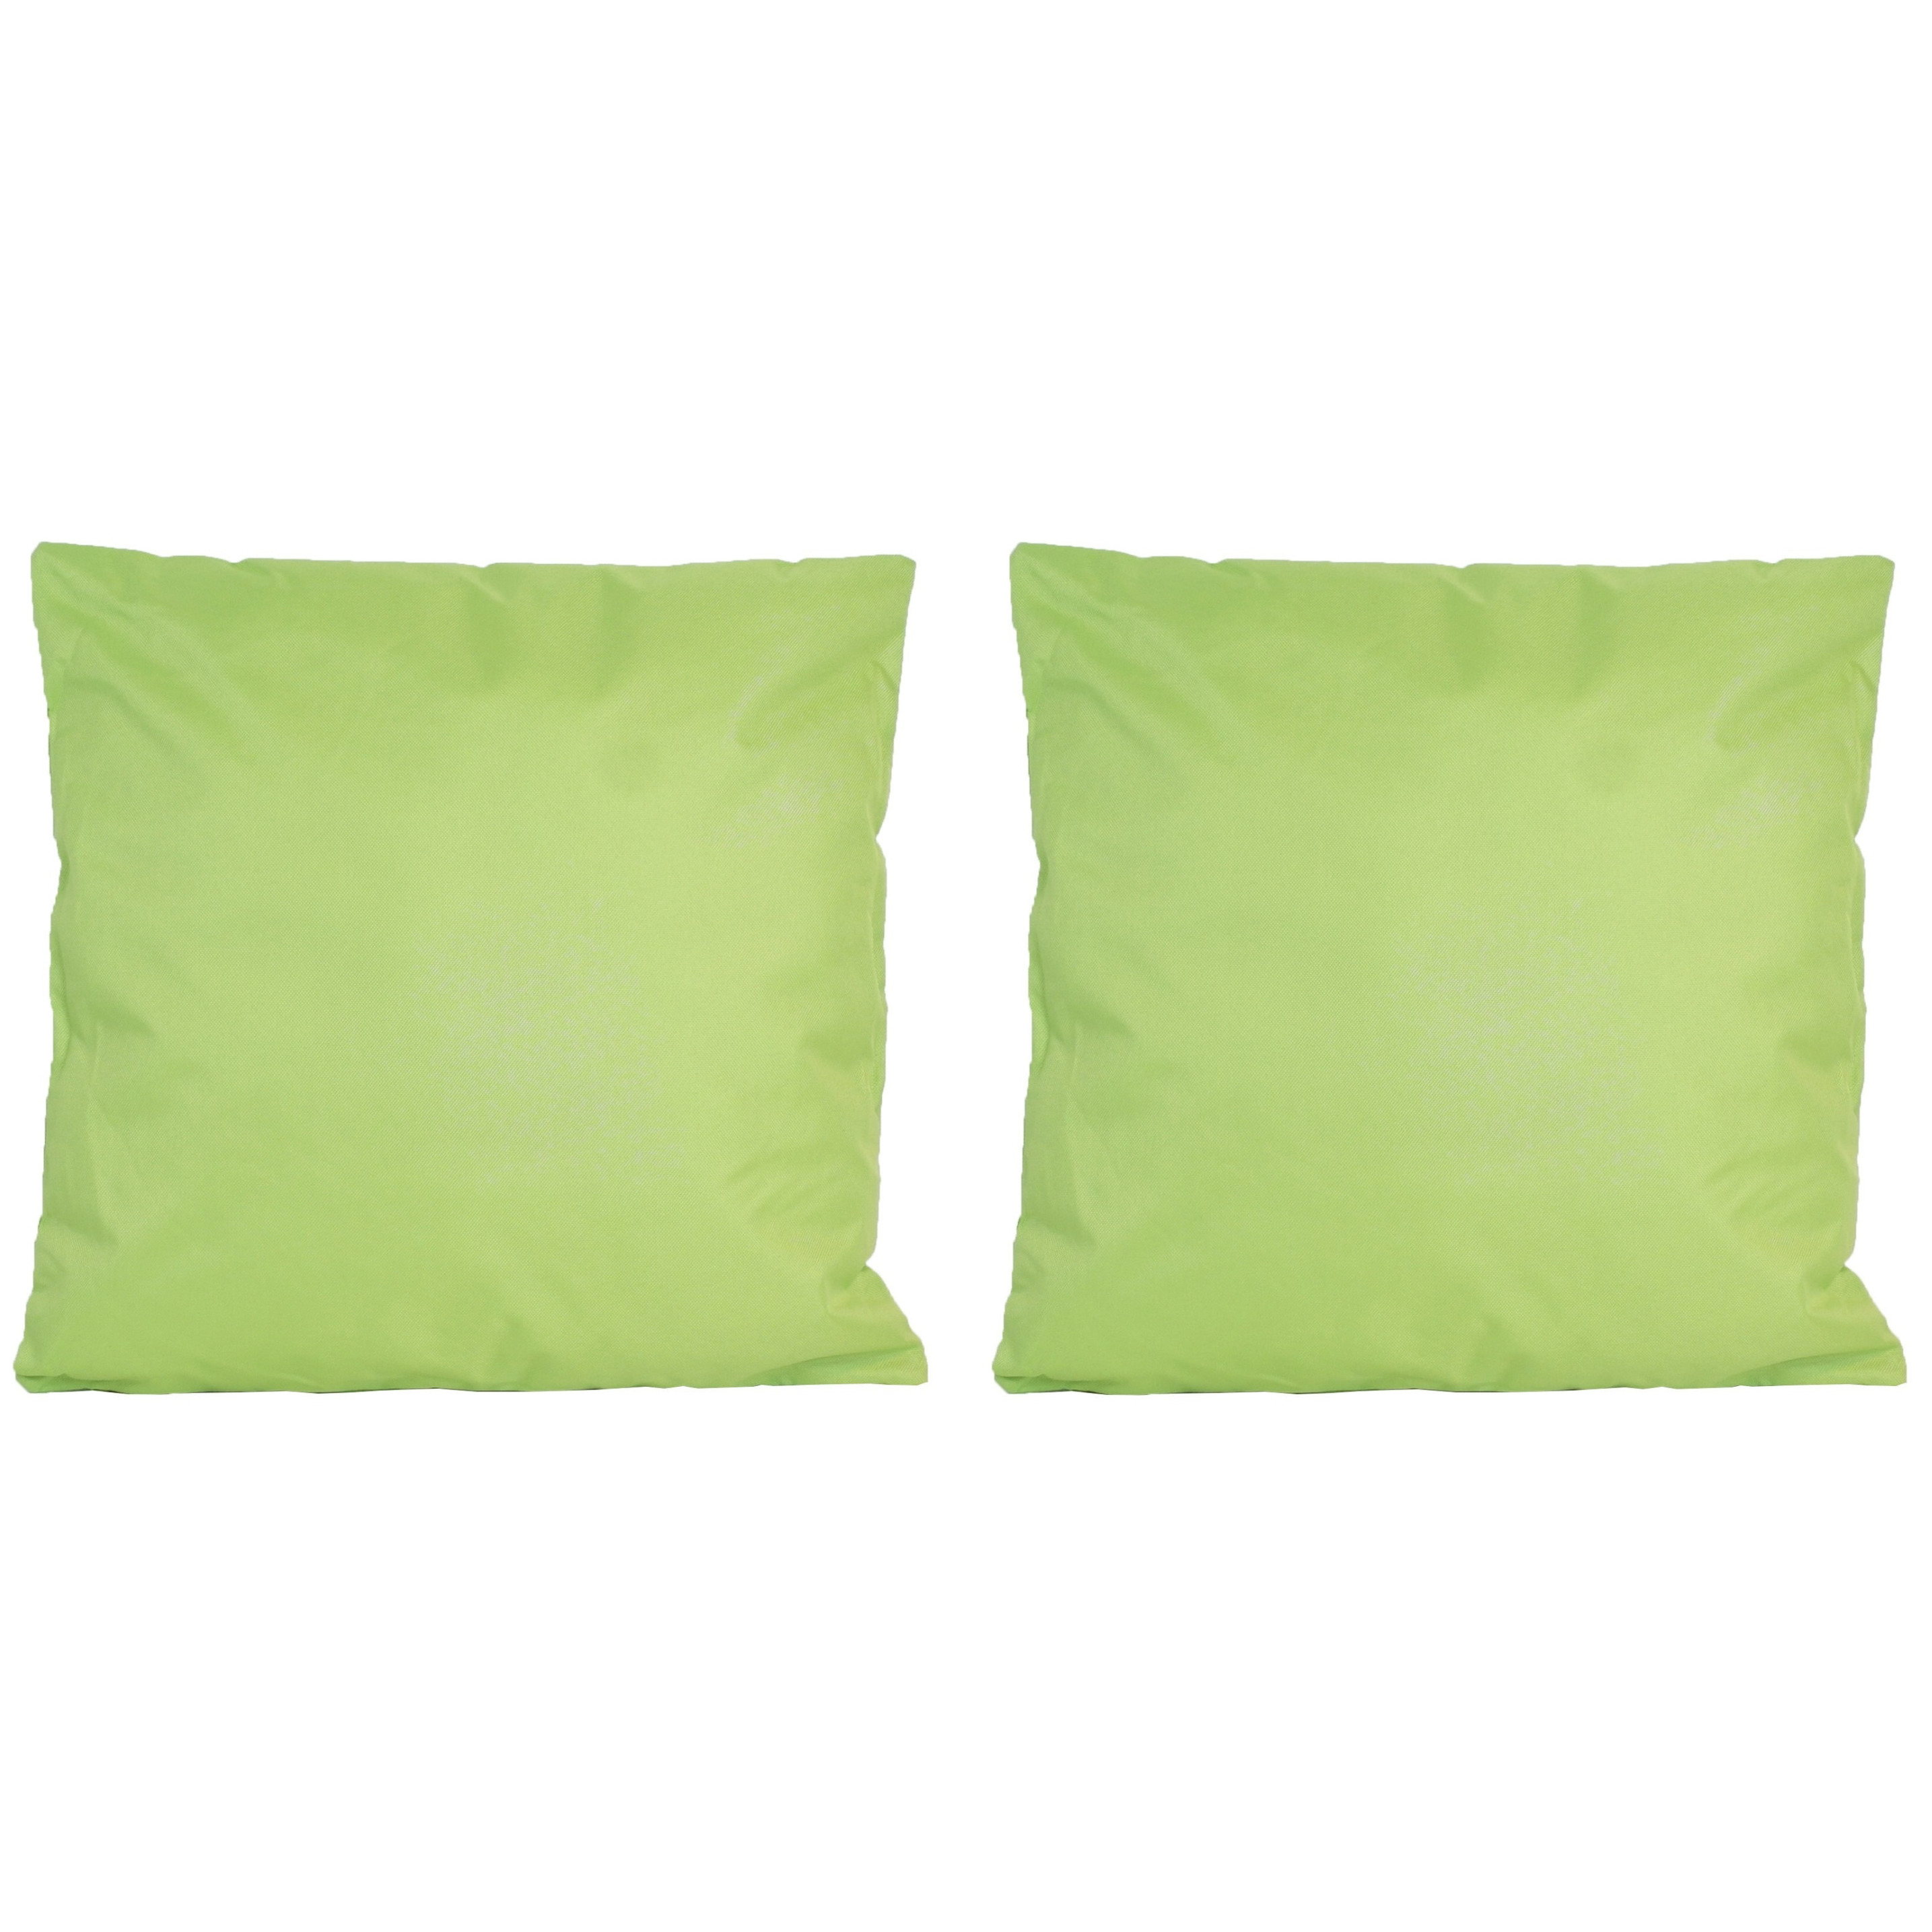 8x Bank-sier kussens voor binnen en buiten in de kleur groen 45 x 45 cm